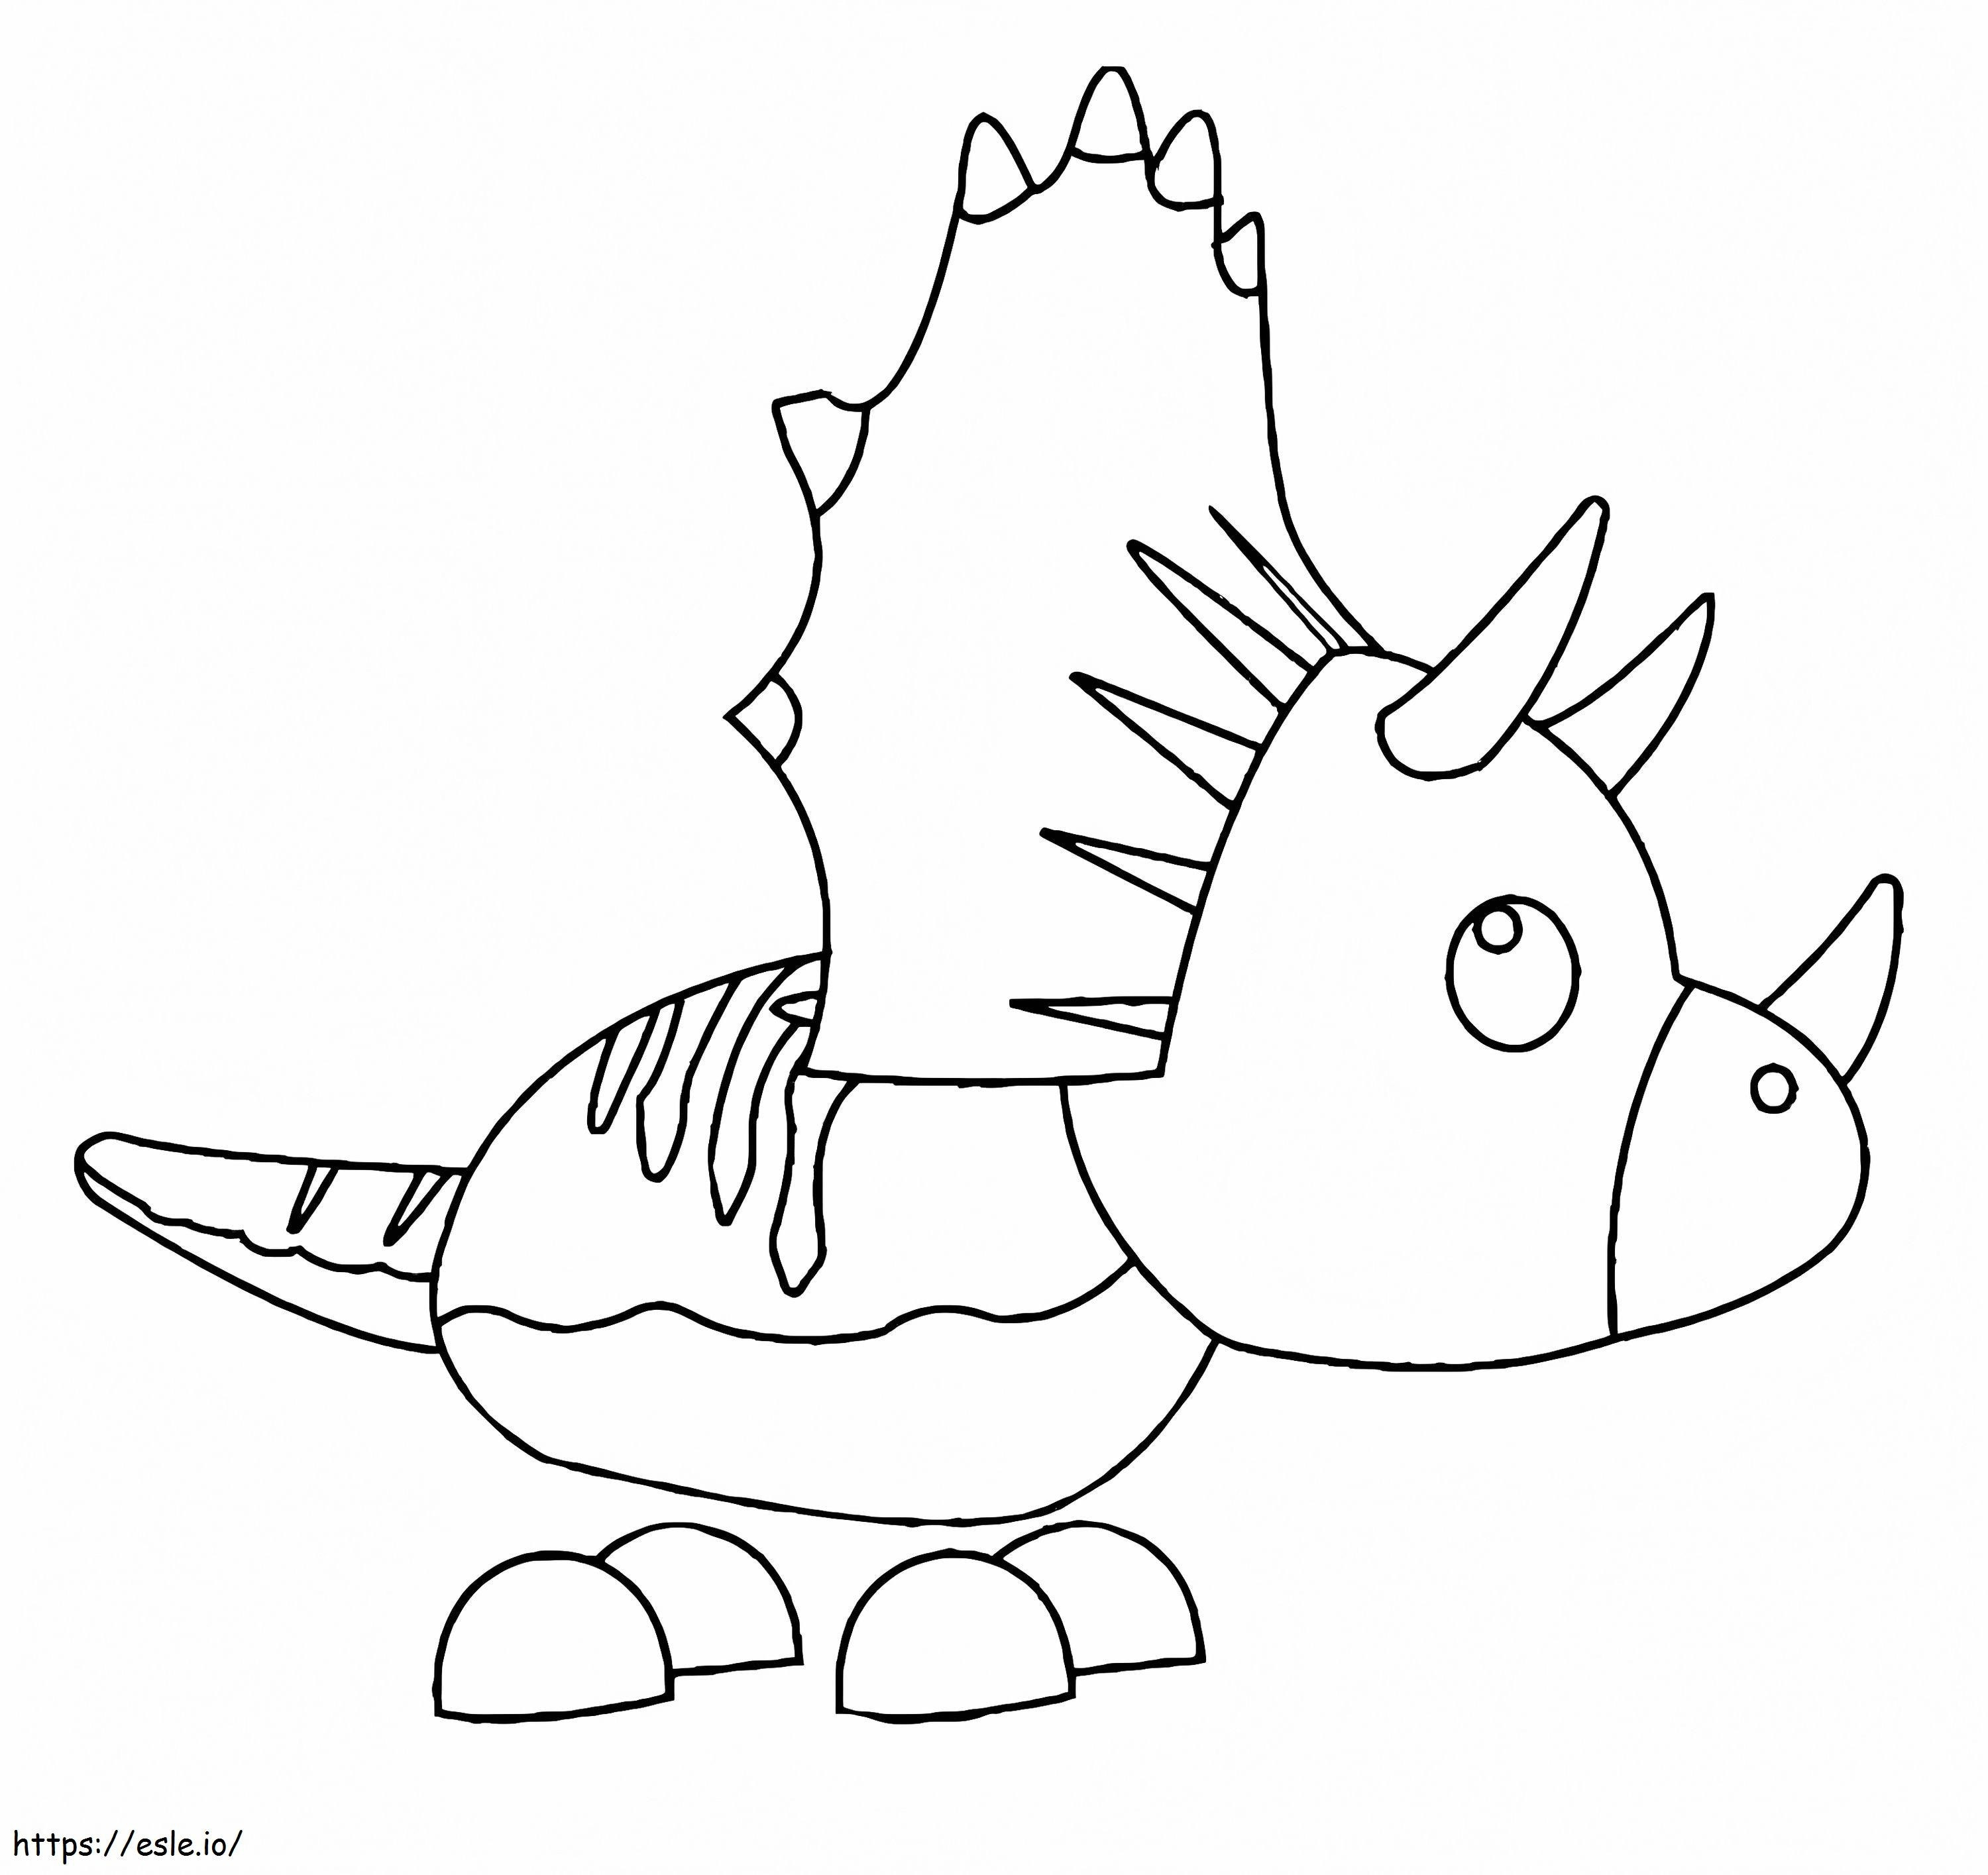 Adopteer me huisdier Triceratops kleurplaat kleurplaat